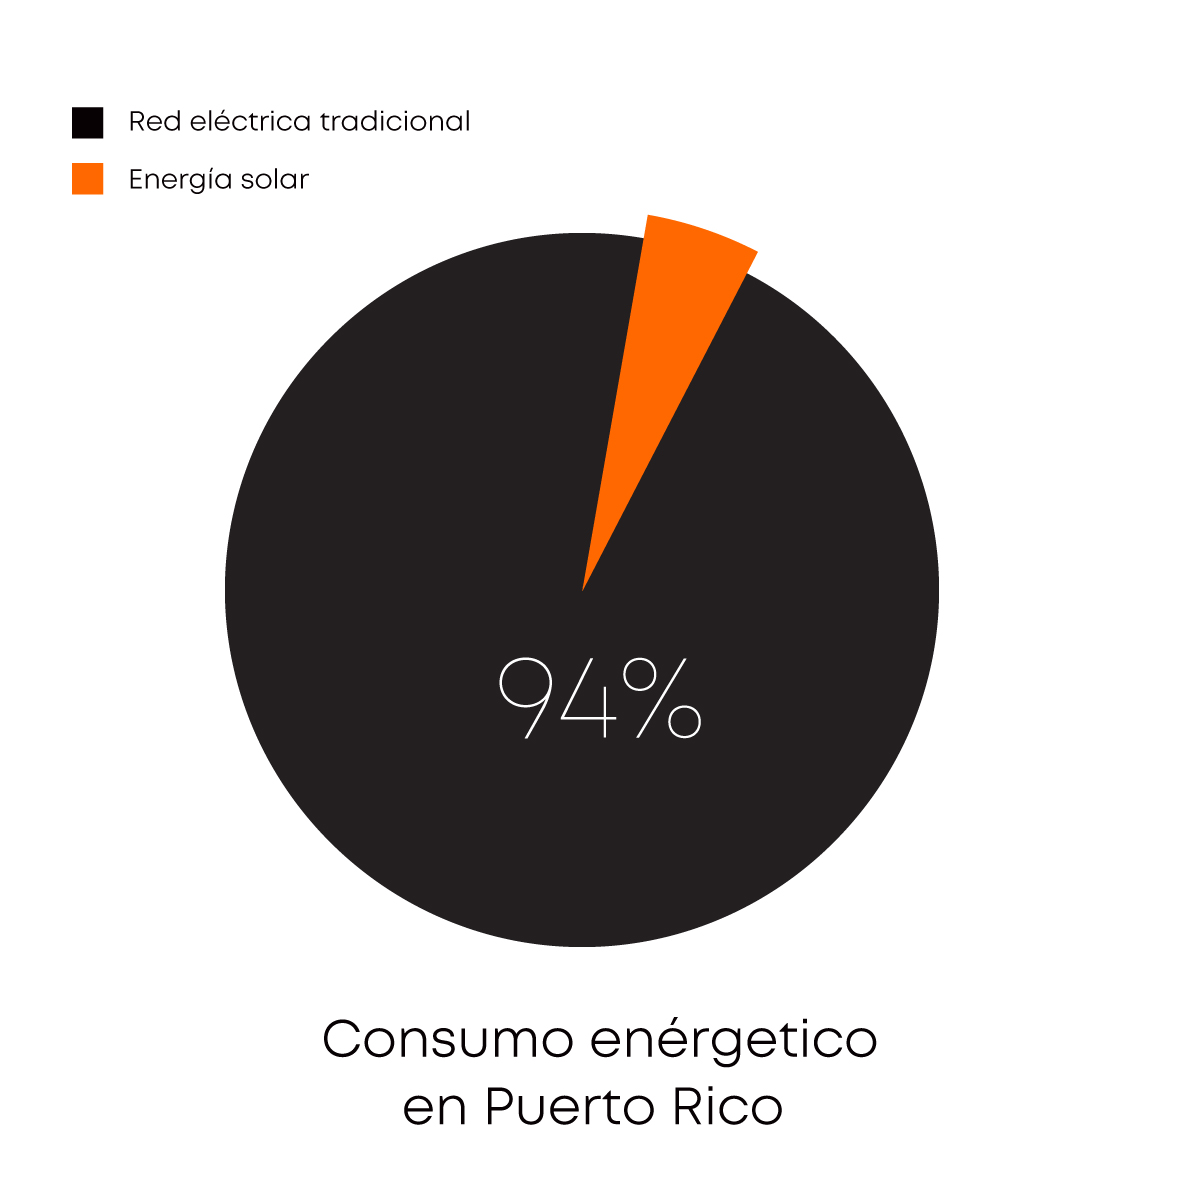 Gráfica de consumo energético en Puerto Rico, mayoría con energía tradicional